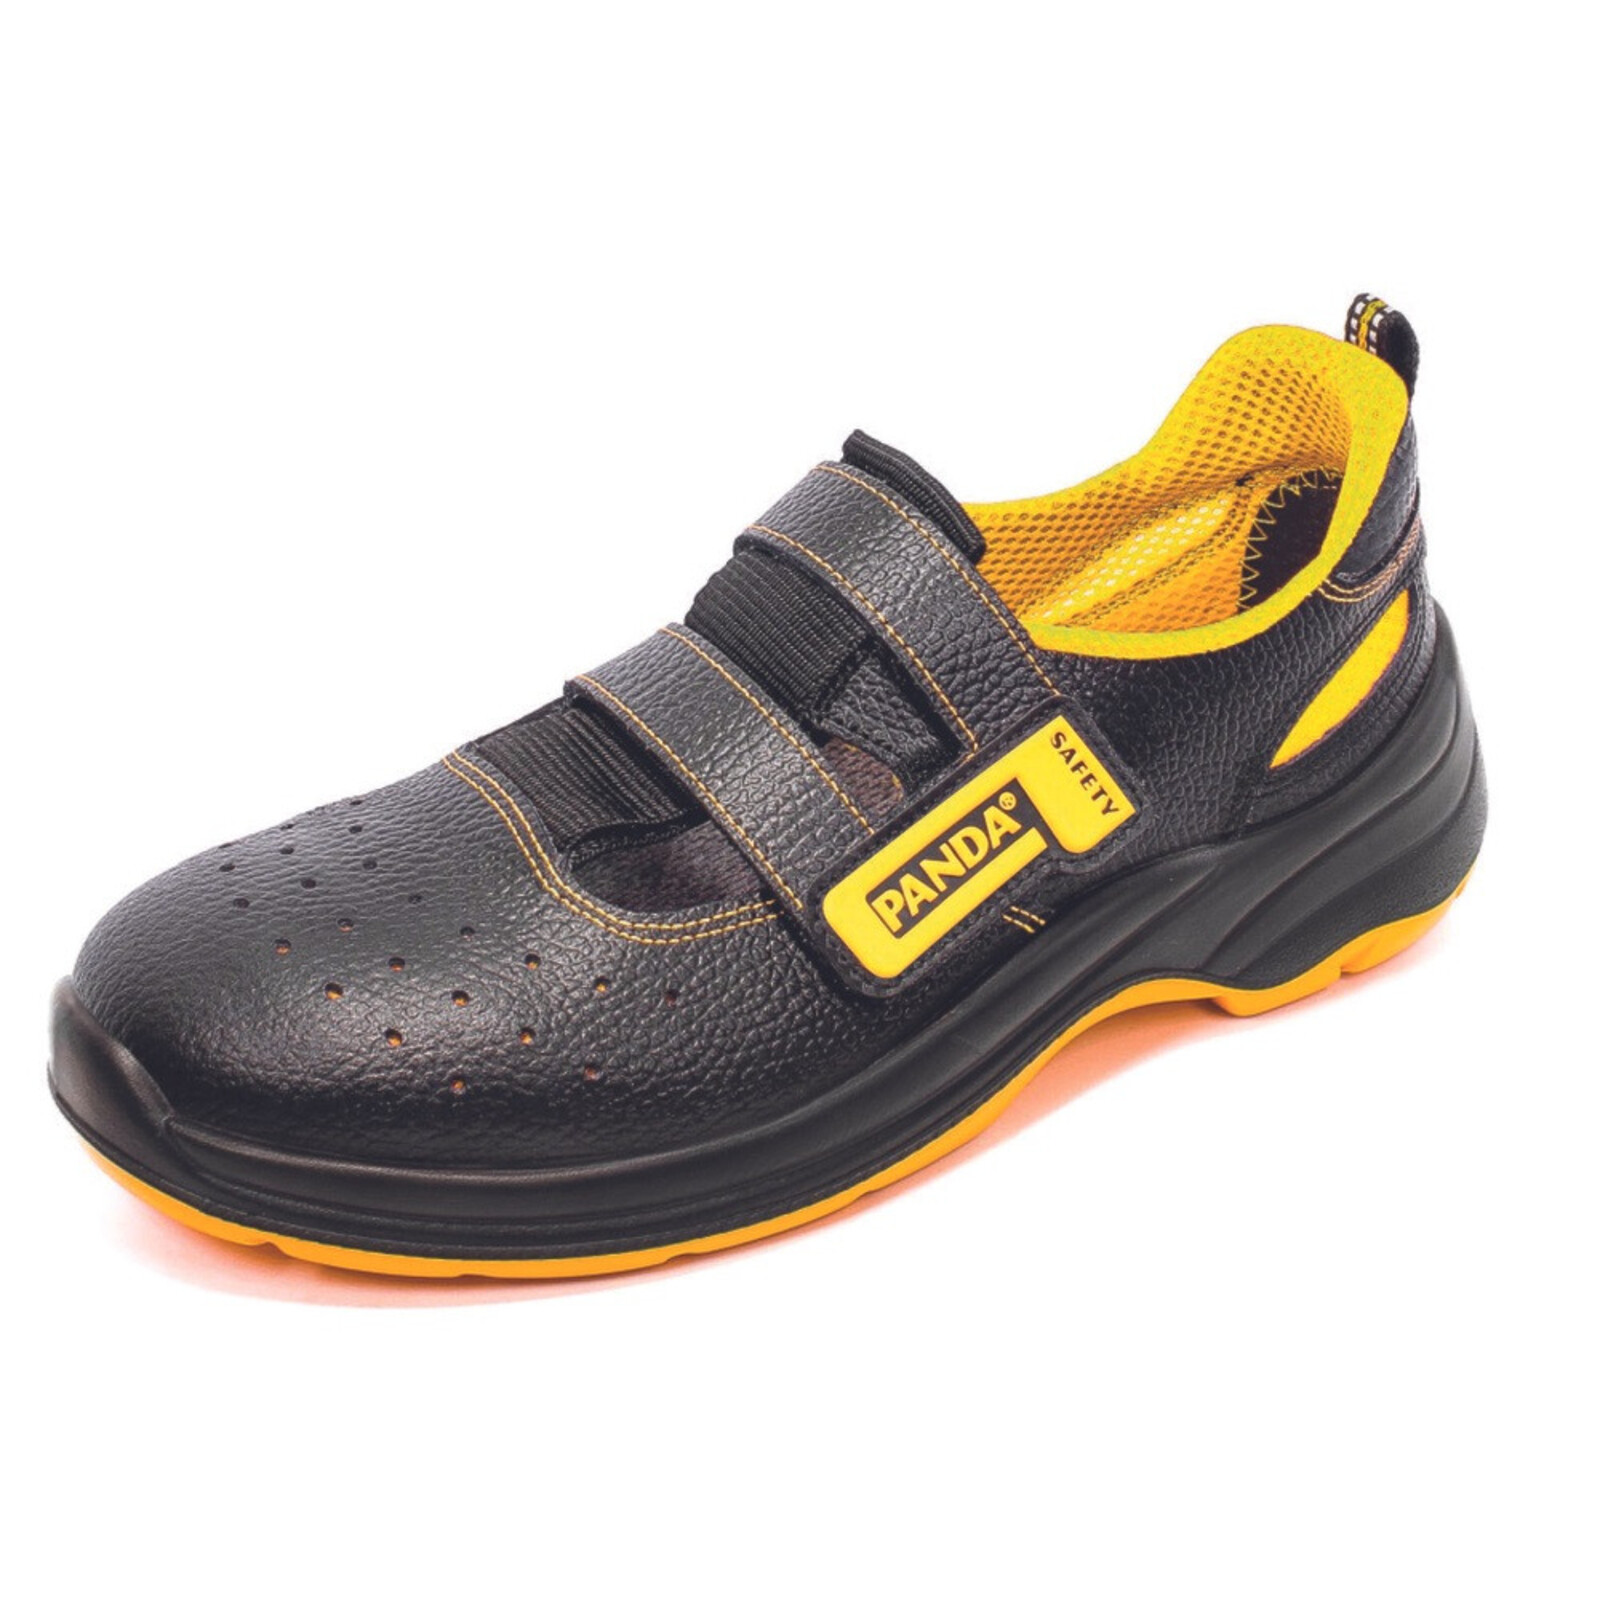 Bezpečnostné sandále Panda Basic Venezia MF S1P SRC - veľkosť: 41, farba: čierna/žltá